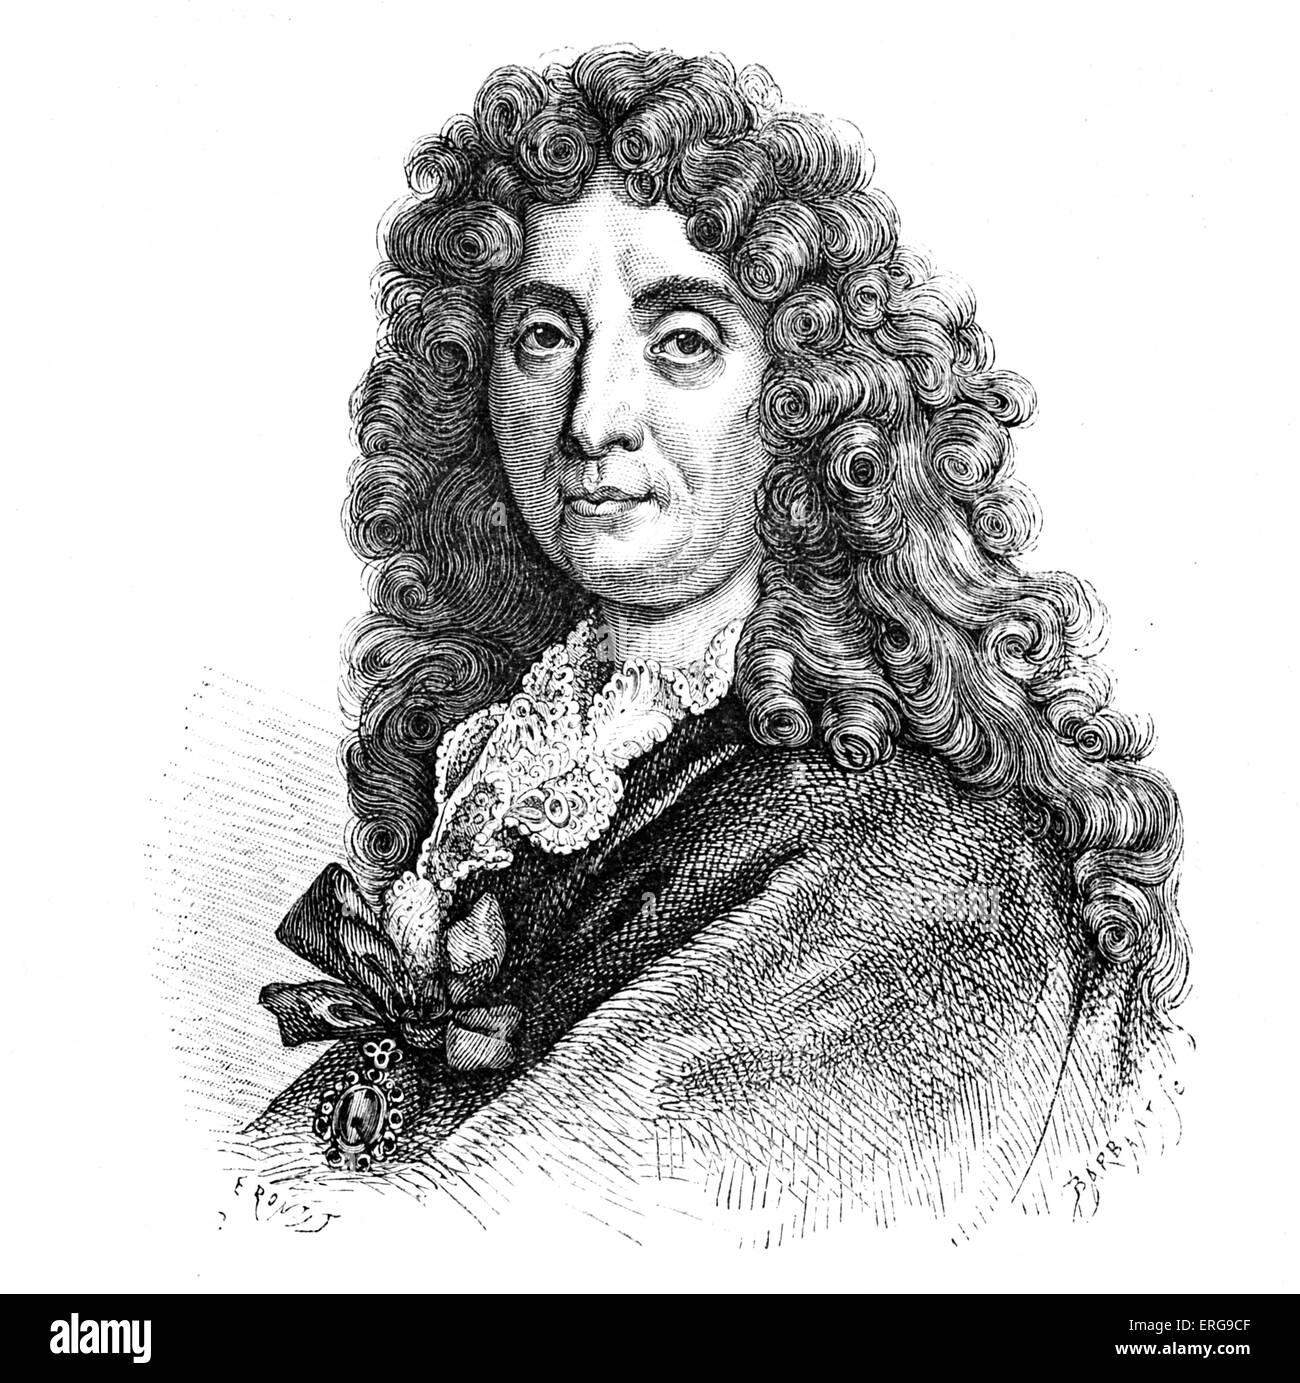 Charles Lebrun - Porträt. Französischer Maler und Kunsttheoretiker: 24. Februar 1619 – 22. Februar 1690. Stockfoto